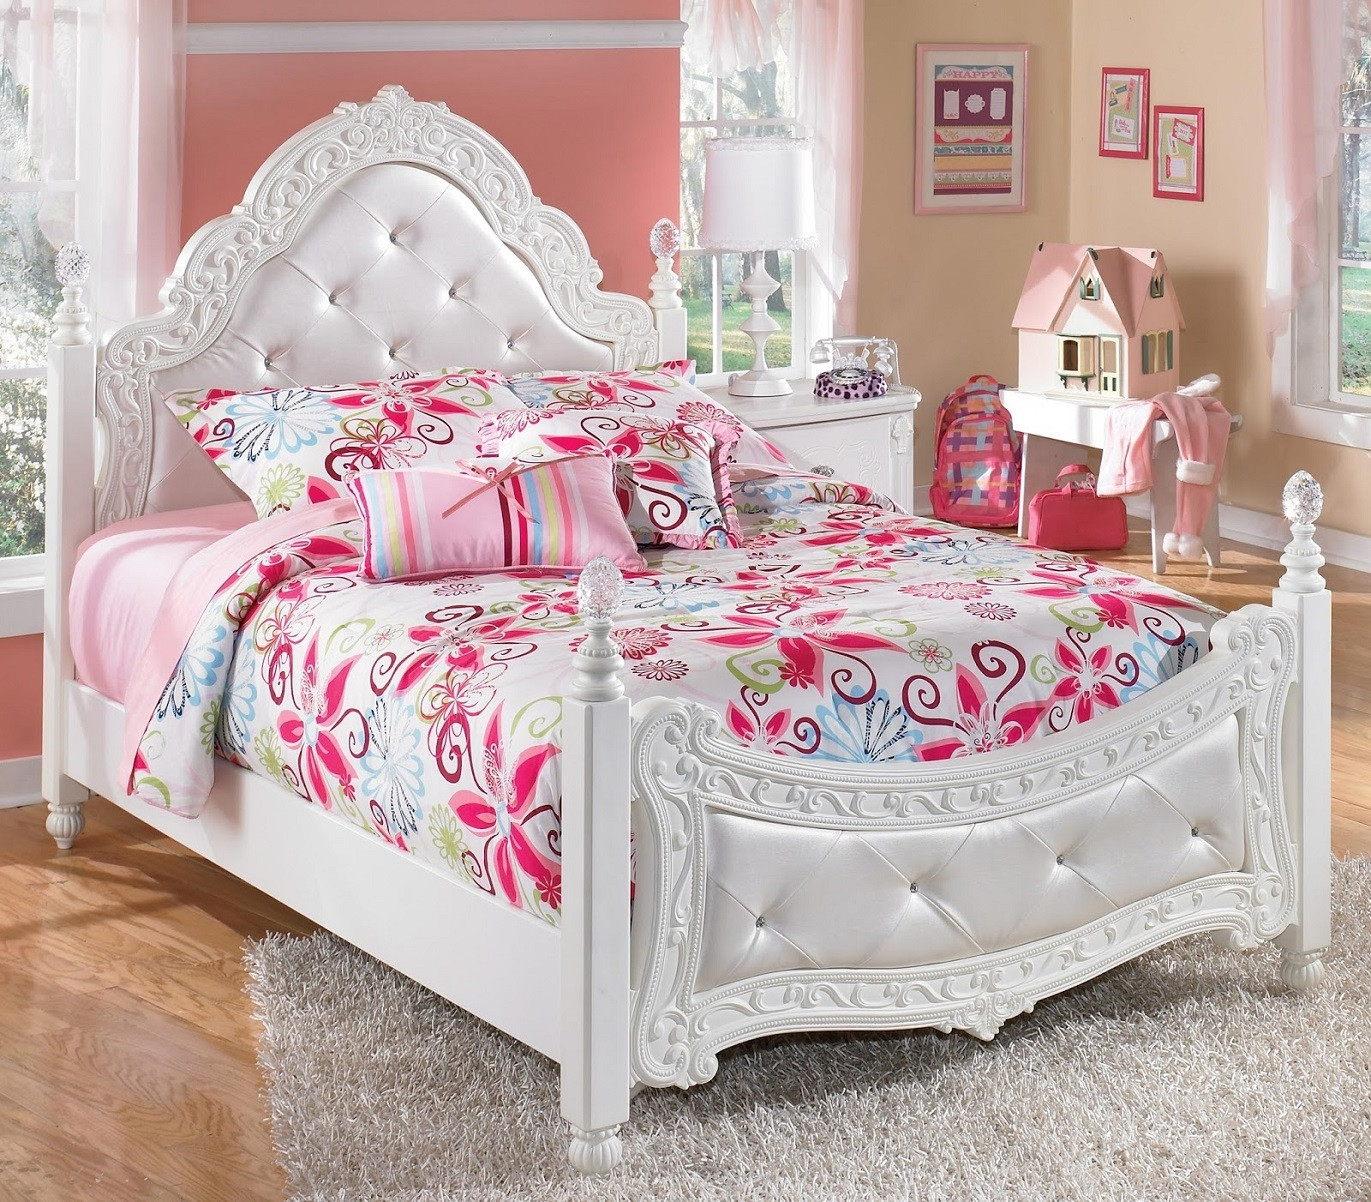 Girls Bedroom Sets Twin
 Bedroom Ashley White Unique Furniture Bedroom Sets For